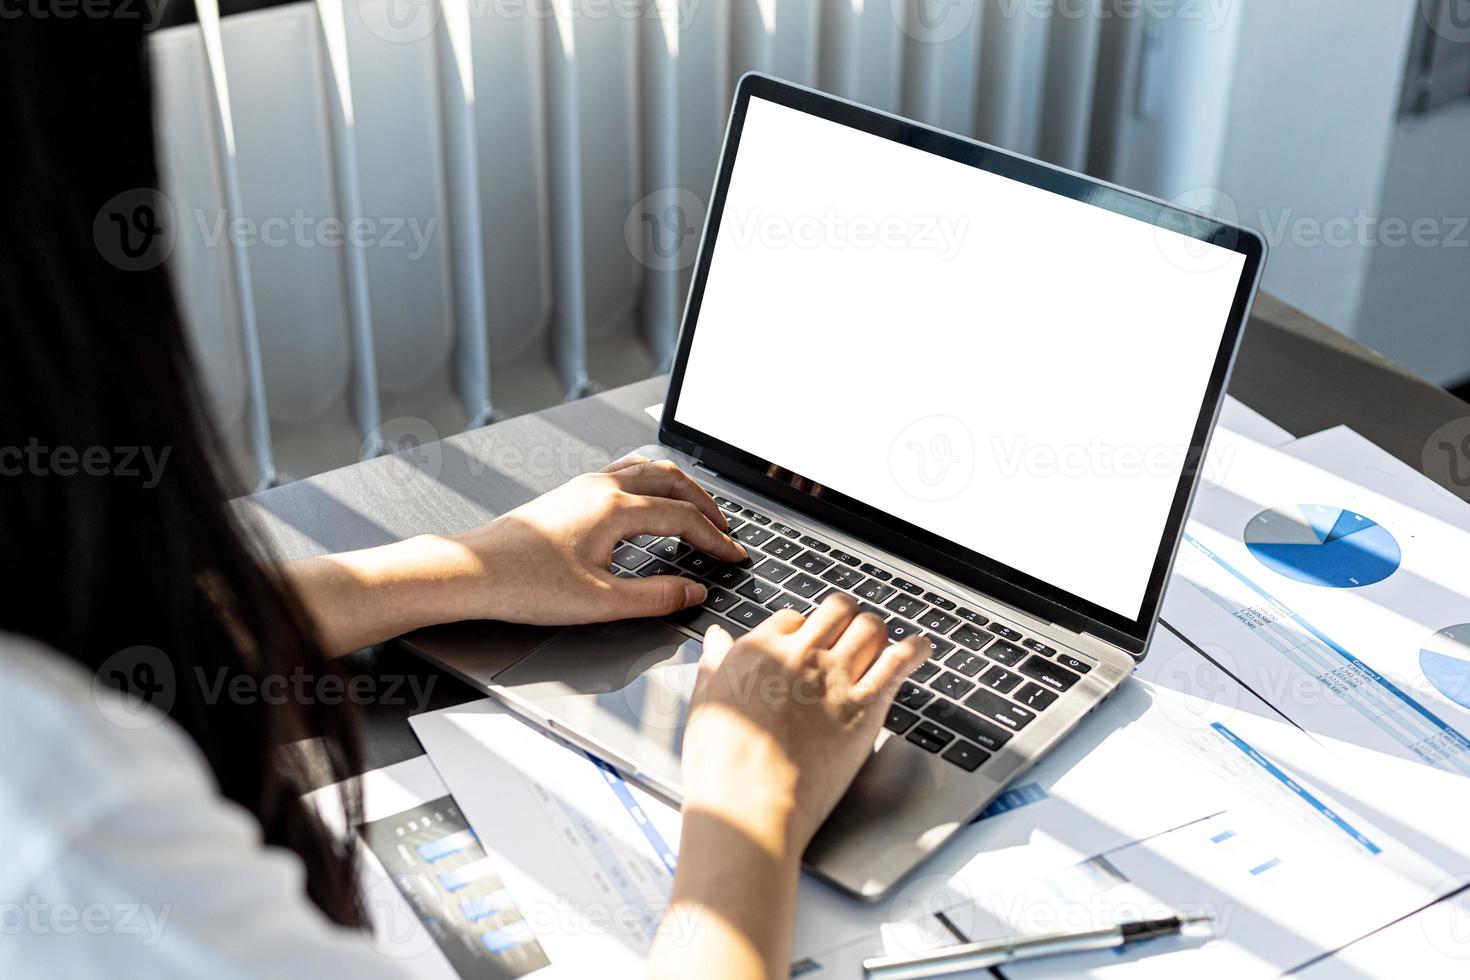 pessoa digitando no teclado do laptop, na tela do laptop em branco fundo branco para ilustração, tela de maquete para edição adicional pode ser usada para uma variedade de tarefas. copie o espaço. foto